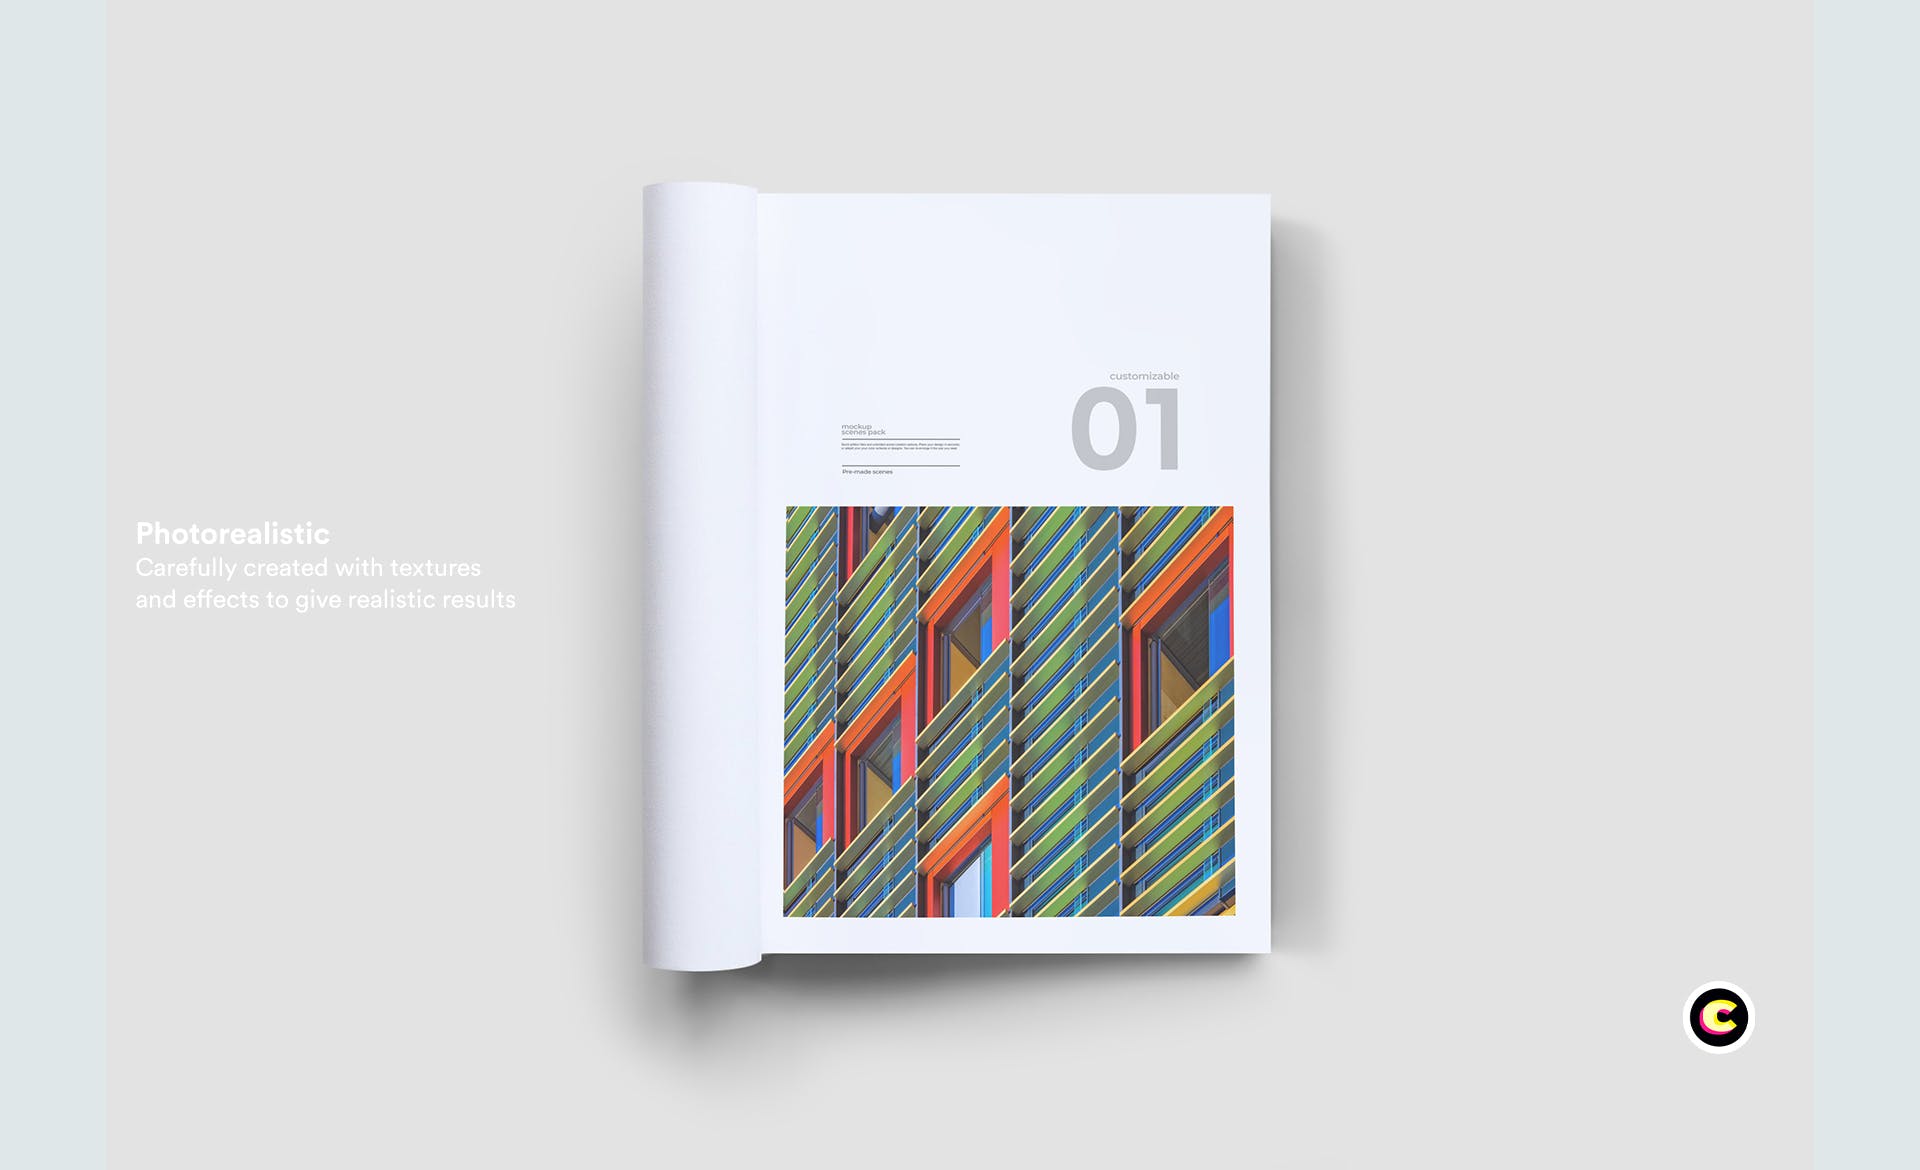 企业画册封面&版式设计效果图样机第一素材精选 Brochure Mock Up插图(4)